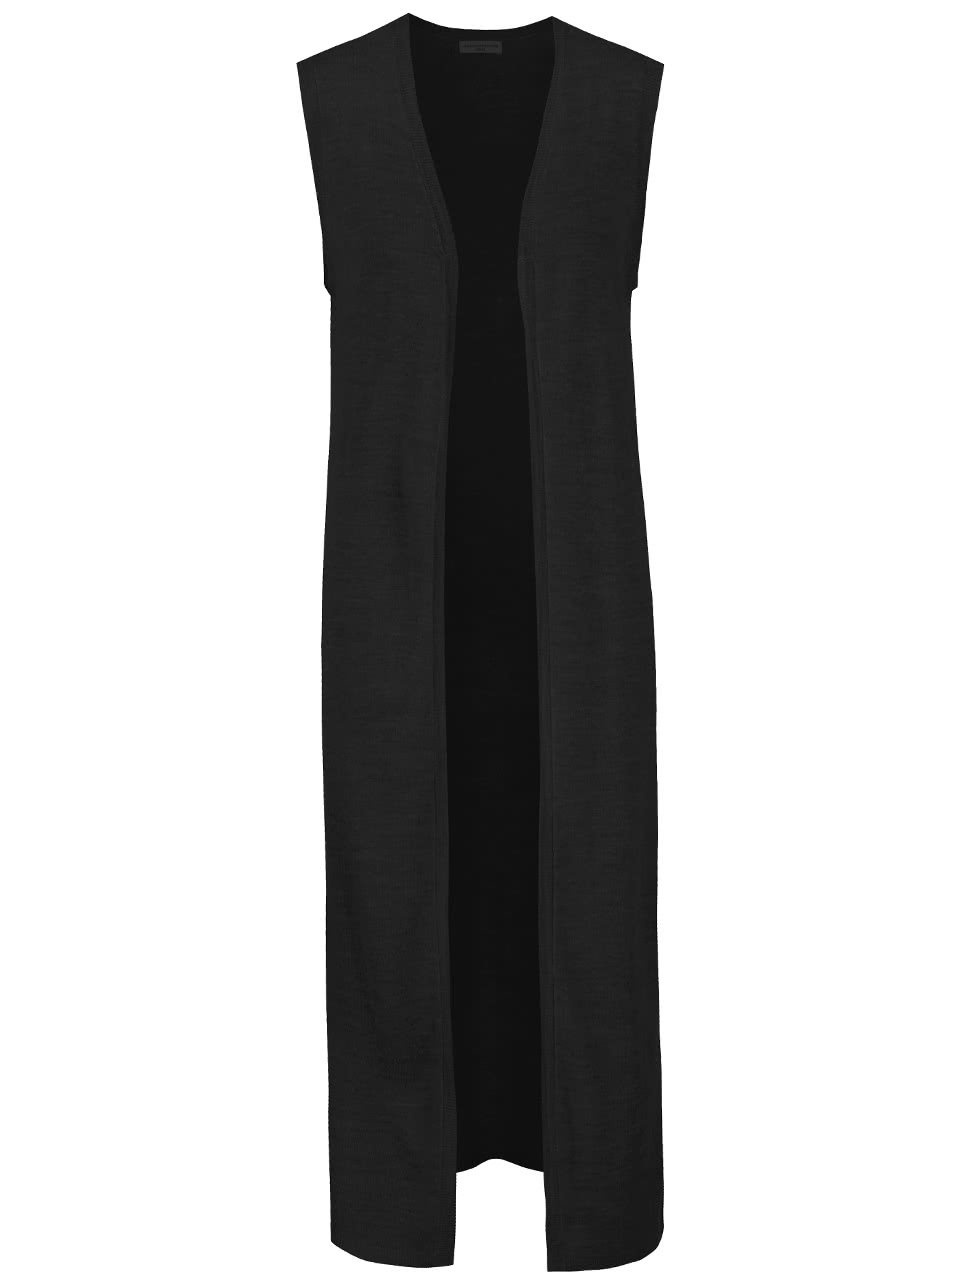 Černá dlouhá svetrová vesta Jacqueline de Yong Copa